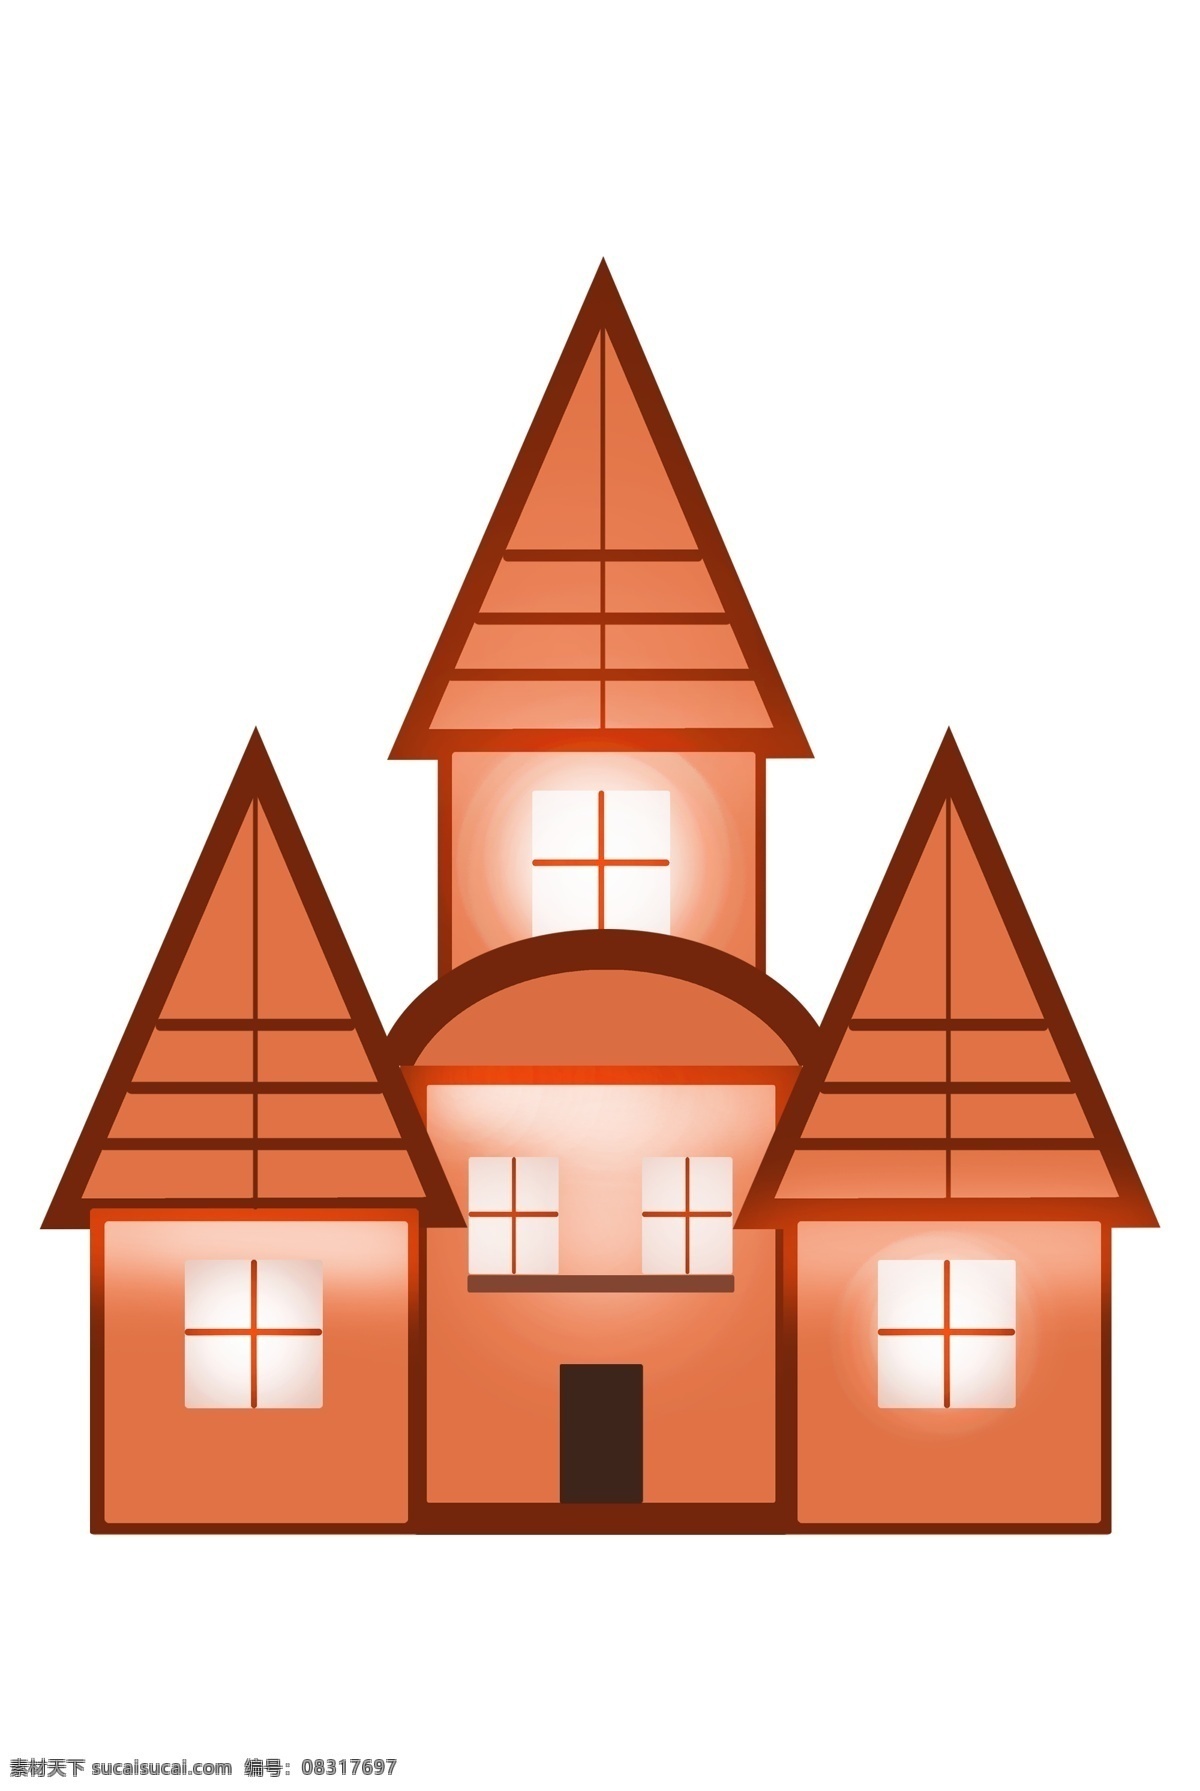 漂亮 橙色 房子 建筑 漂亮的建筑 橙色房子 尖顶房子 尖顶建筑物 城堡建筑 橙色城堡